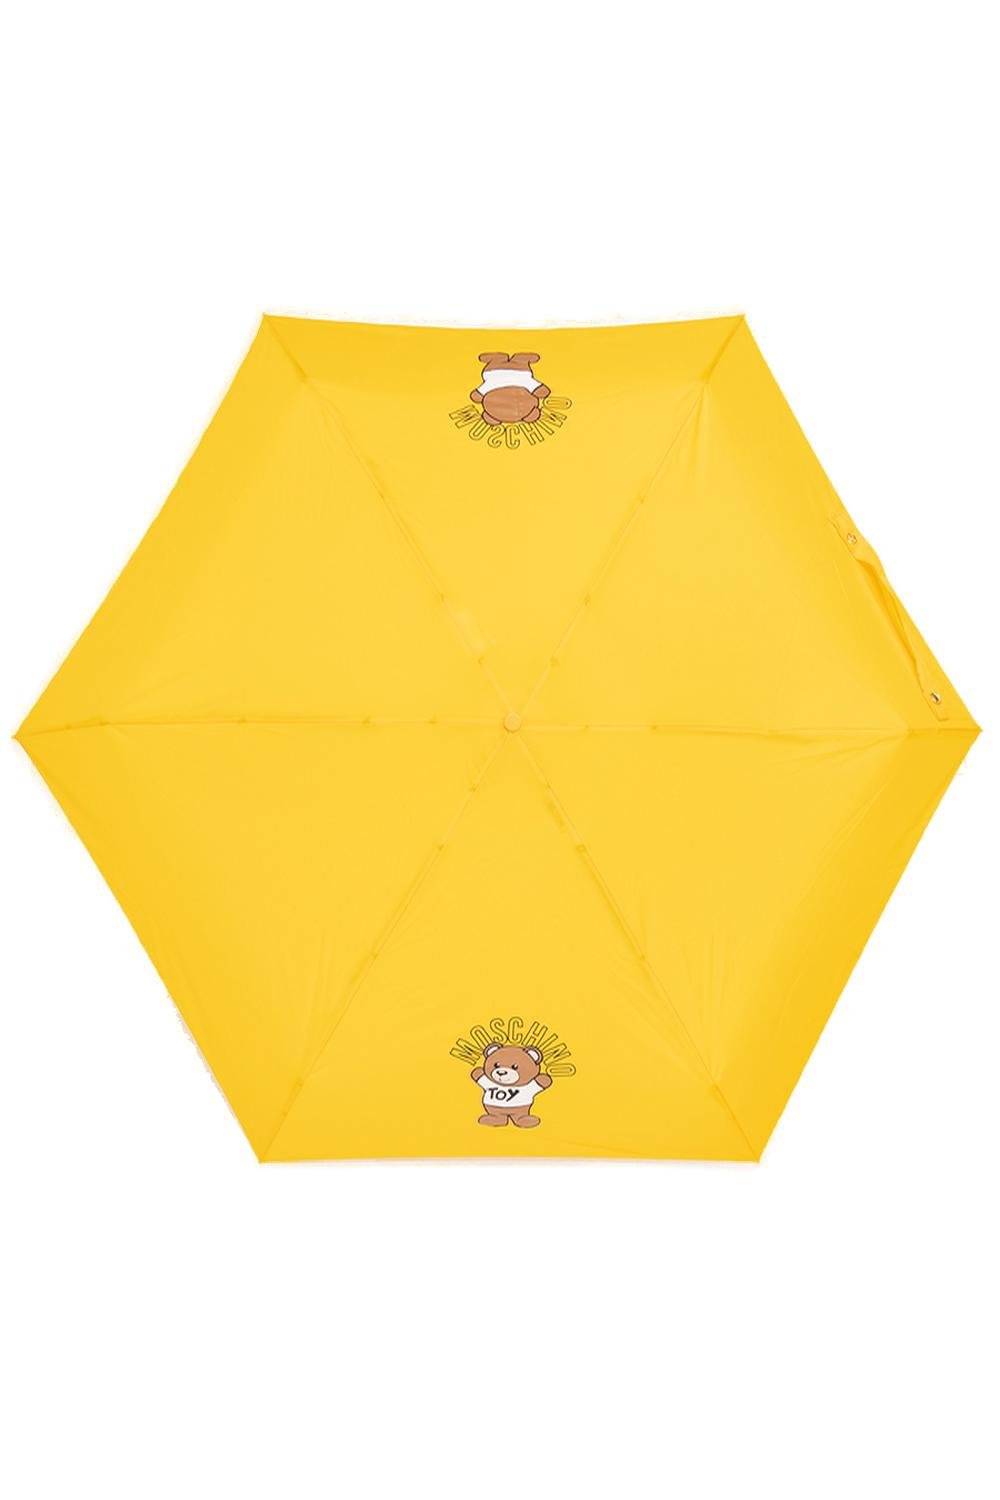 Moschino 테디 베어 프린트 컴팩트 우산